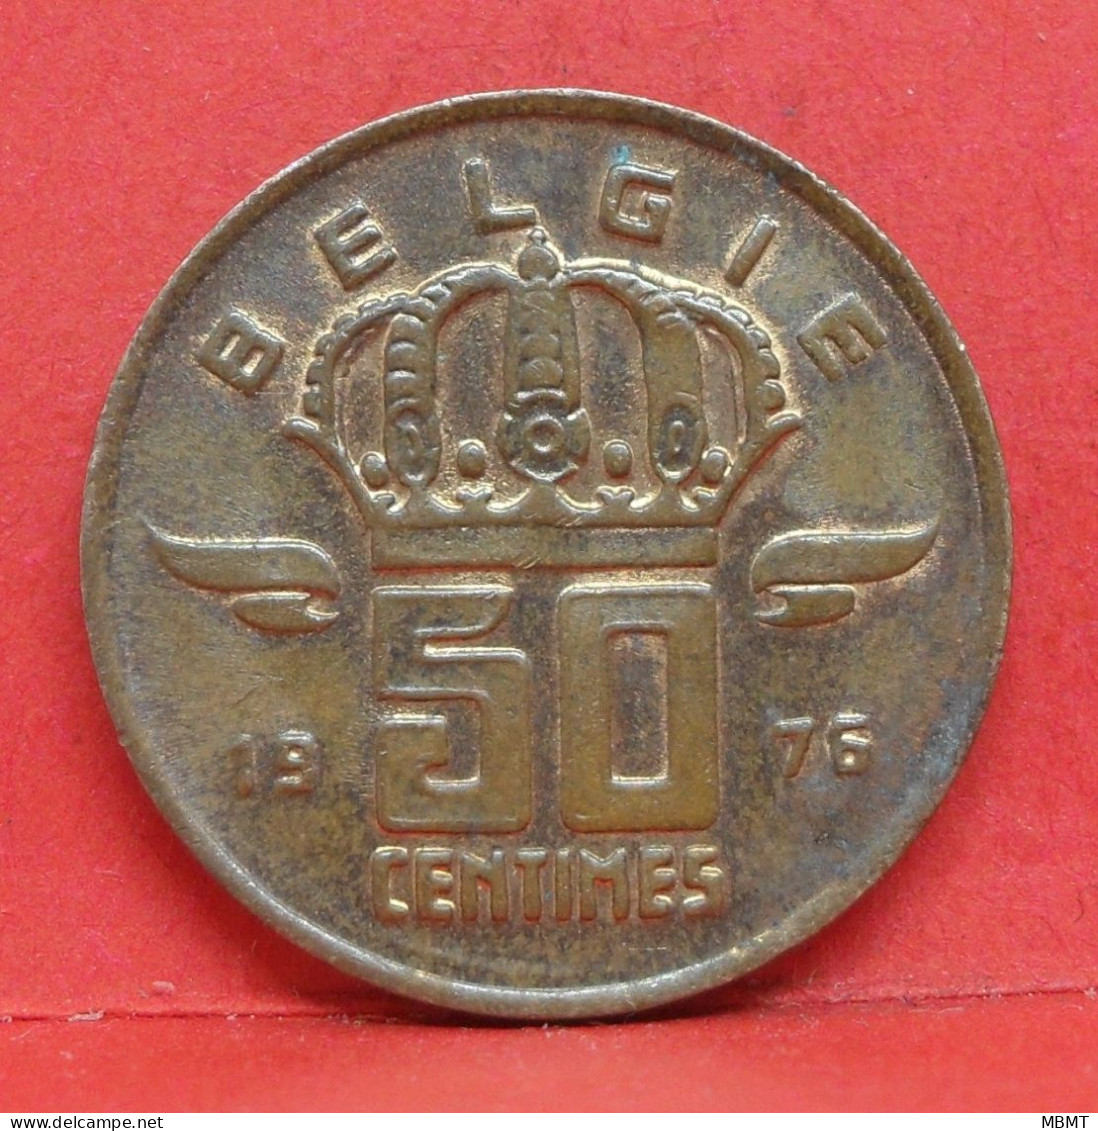 50 Centimes 1975 - SUP - Pièce Monnaie Belgie - Article N°1893 - 50 Cent